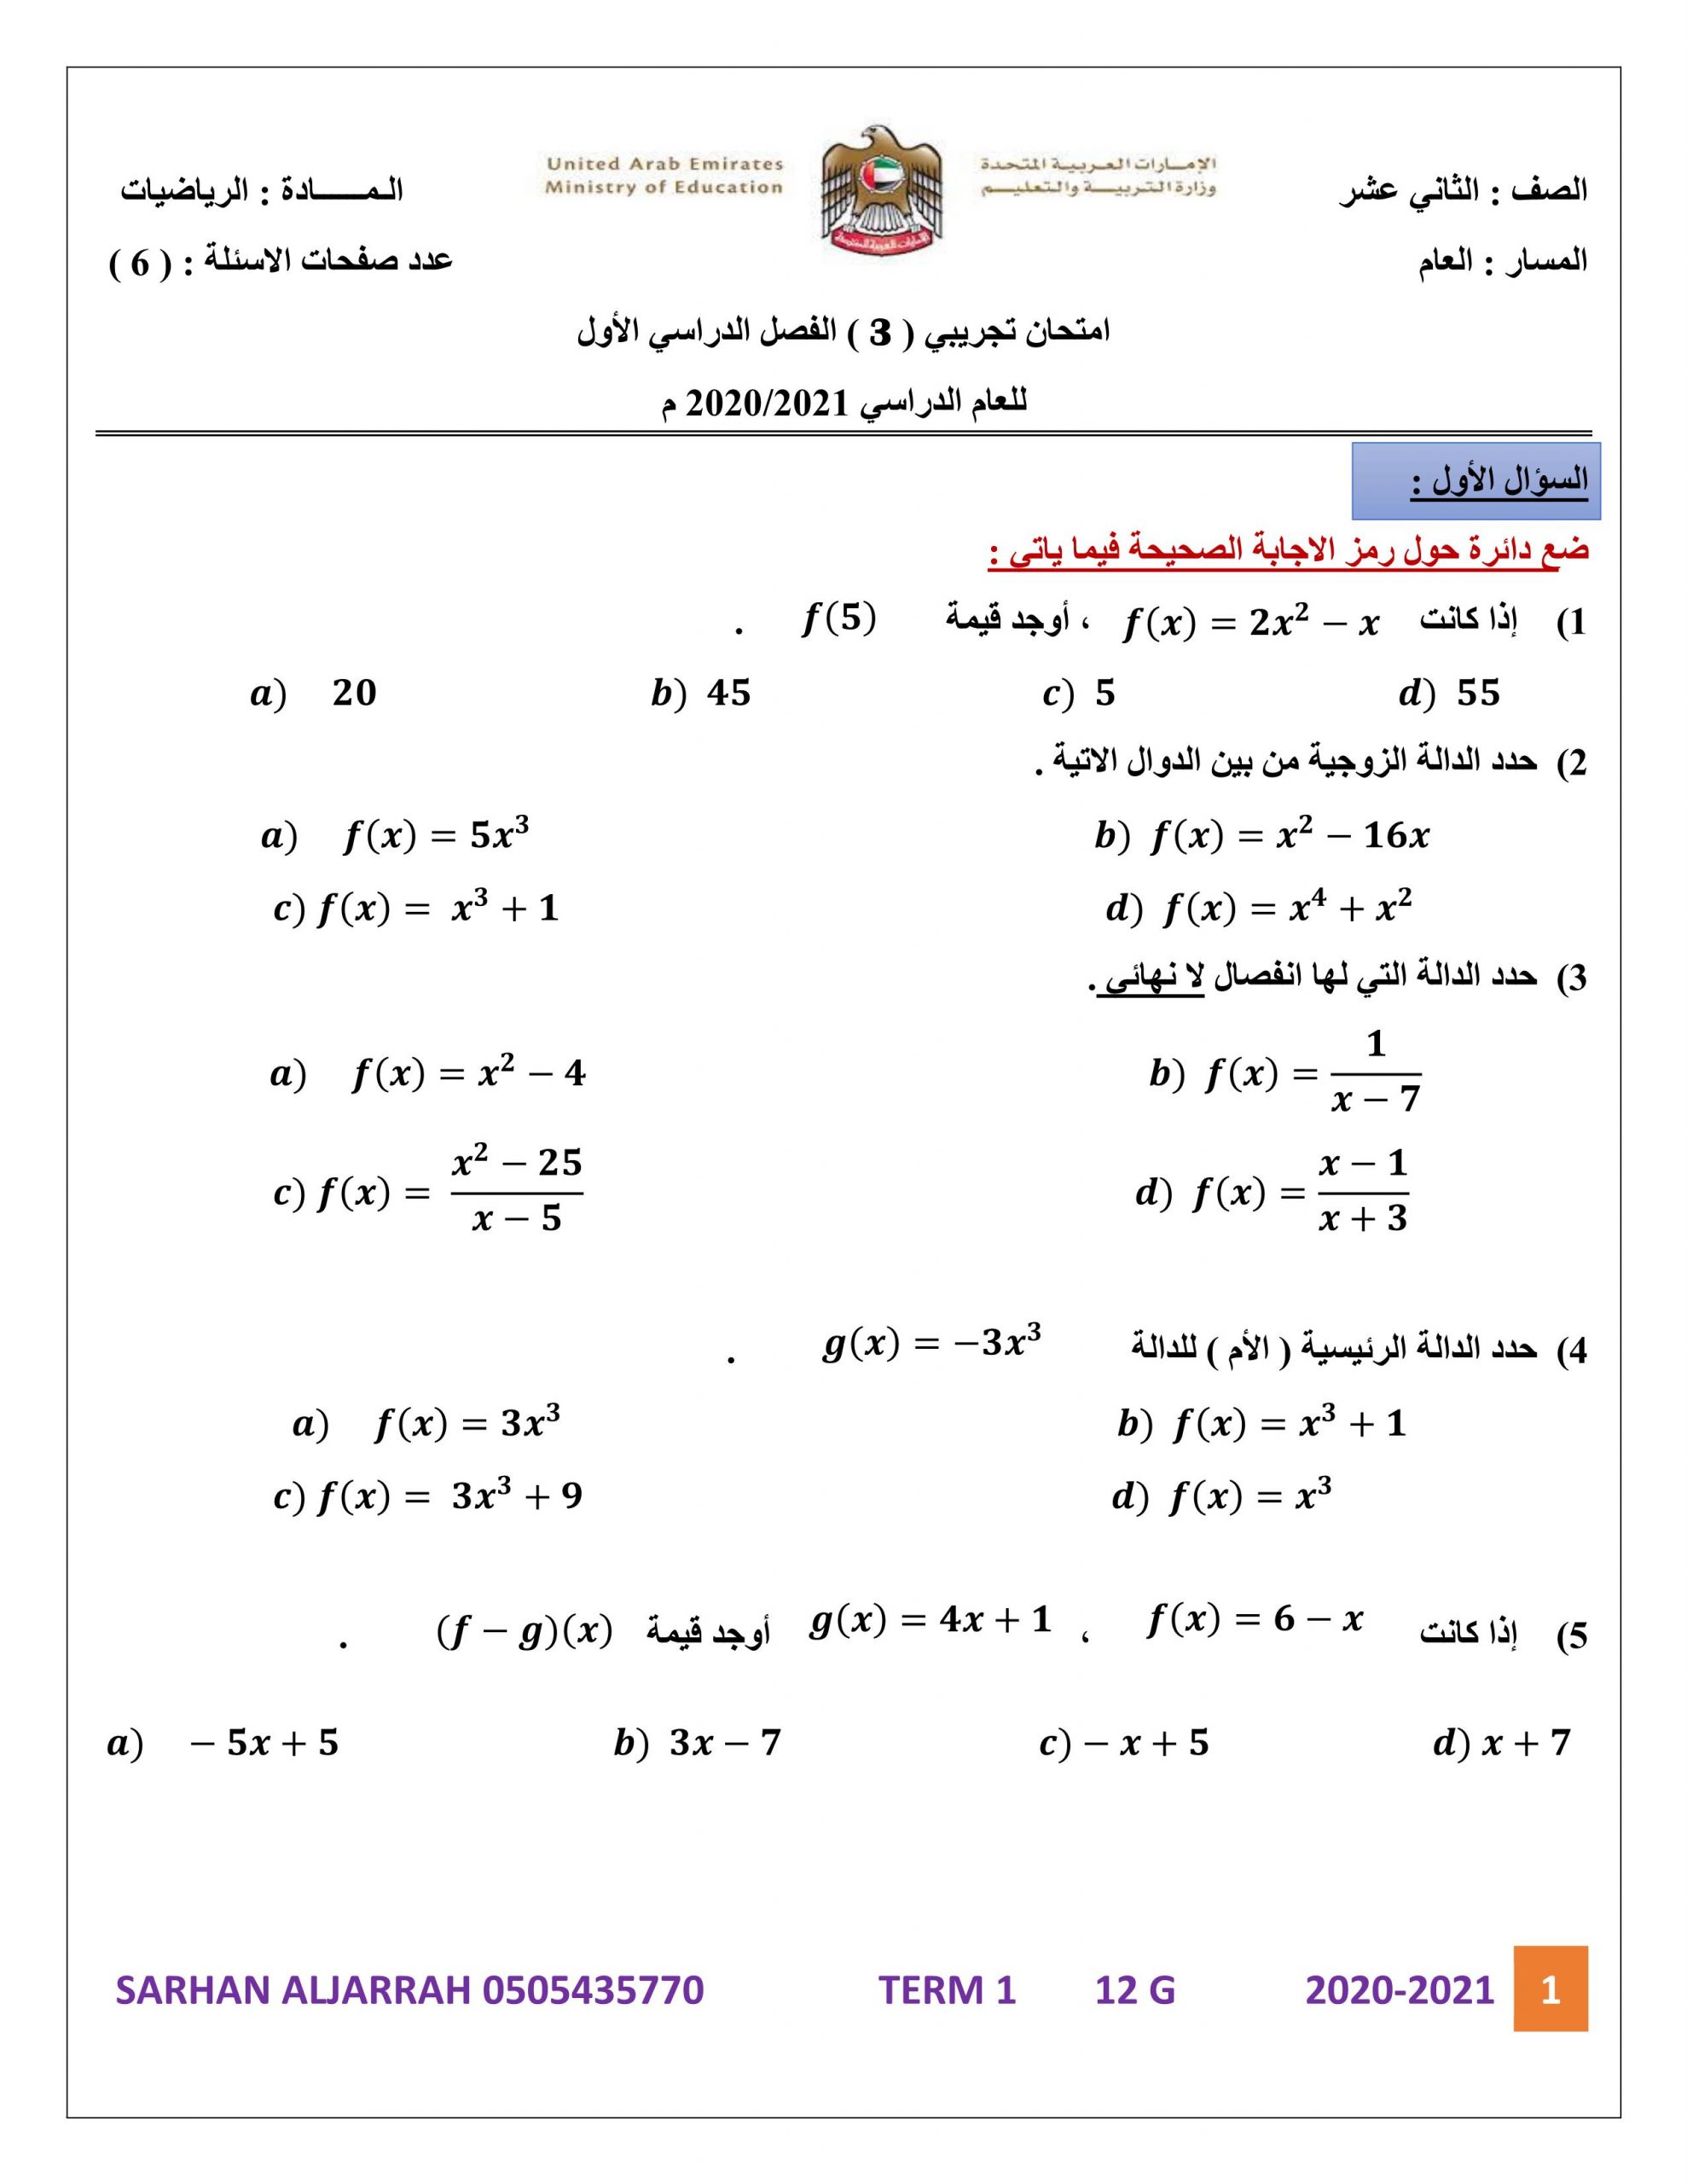 نموذج امتحان الفصل الدراسي الاول الصف الثاني عشر عام مادة الرياضيات المتكاملة